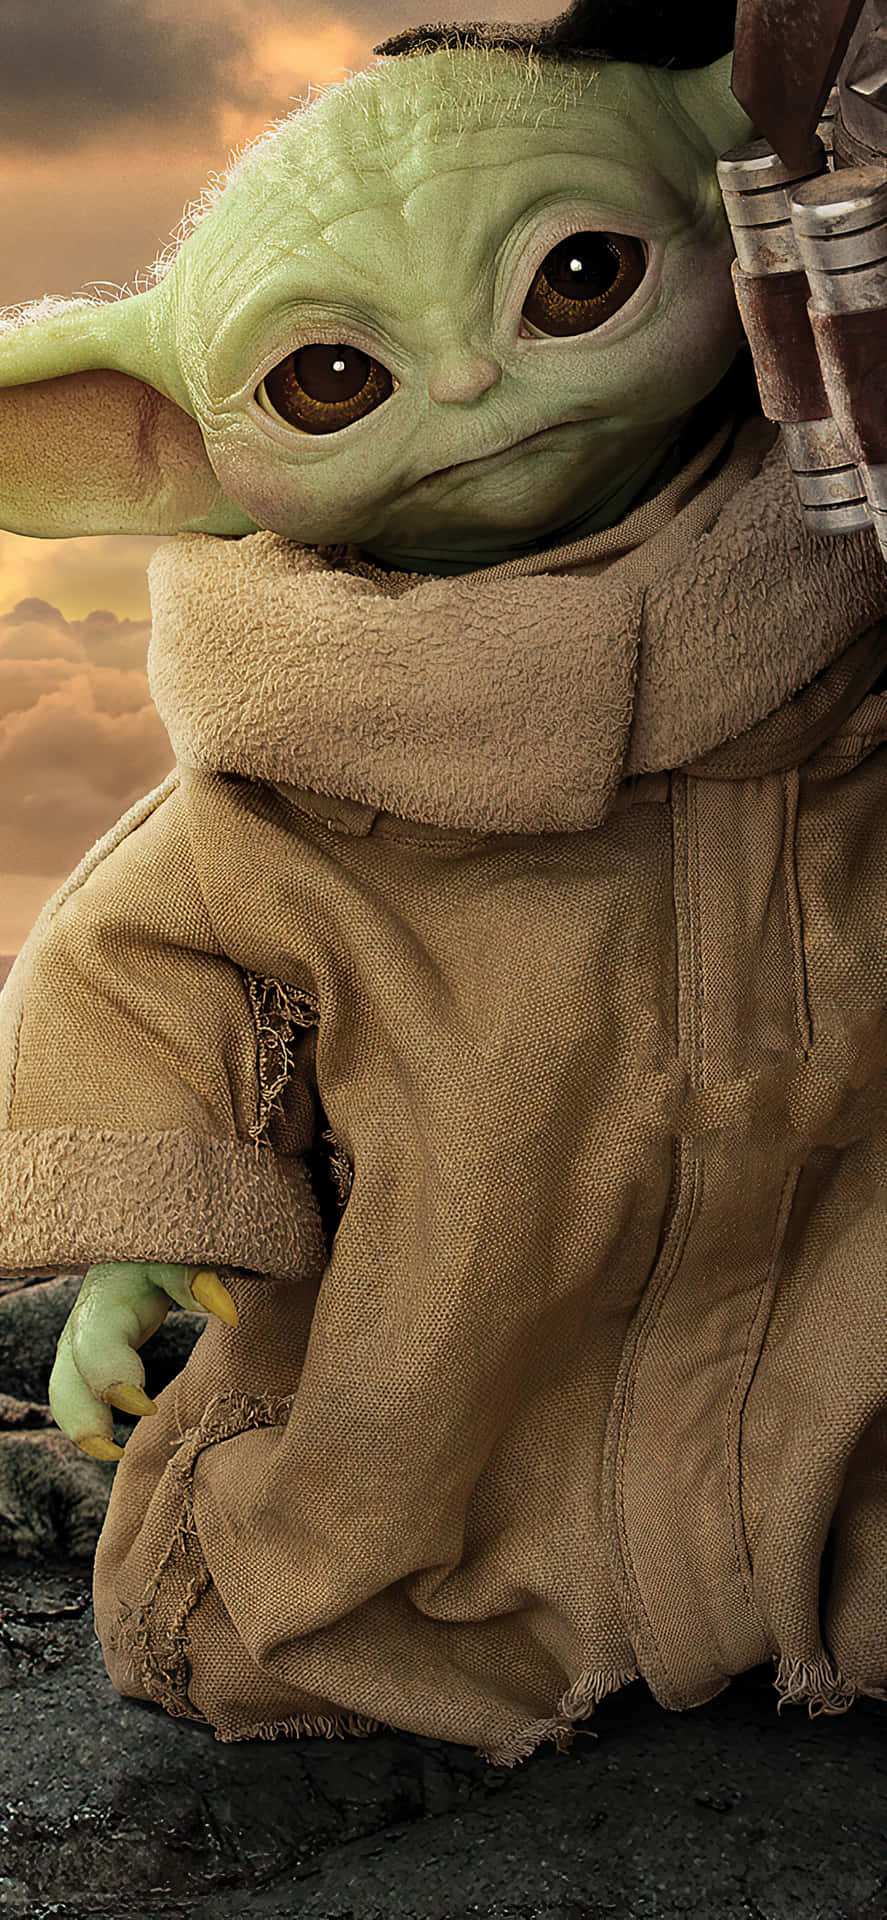 Sagehallo Zu Der Neuesten Ergänzung Auf Deinem Handy - Baby Yoda! Wallpaper